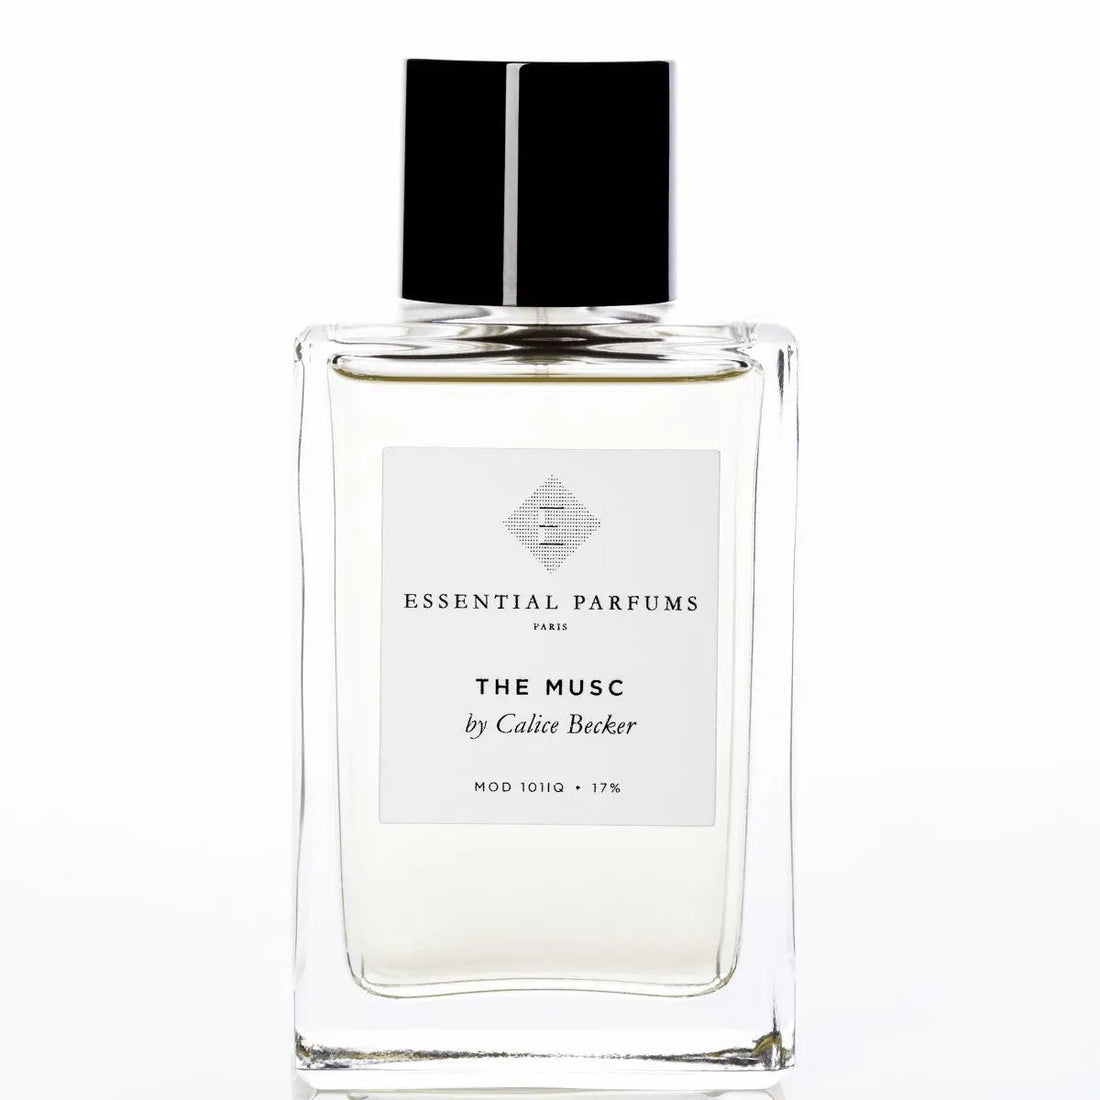 Essential parfums The Musc eau de parfum - 100 ml